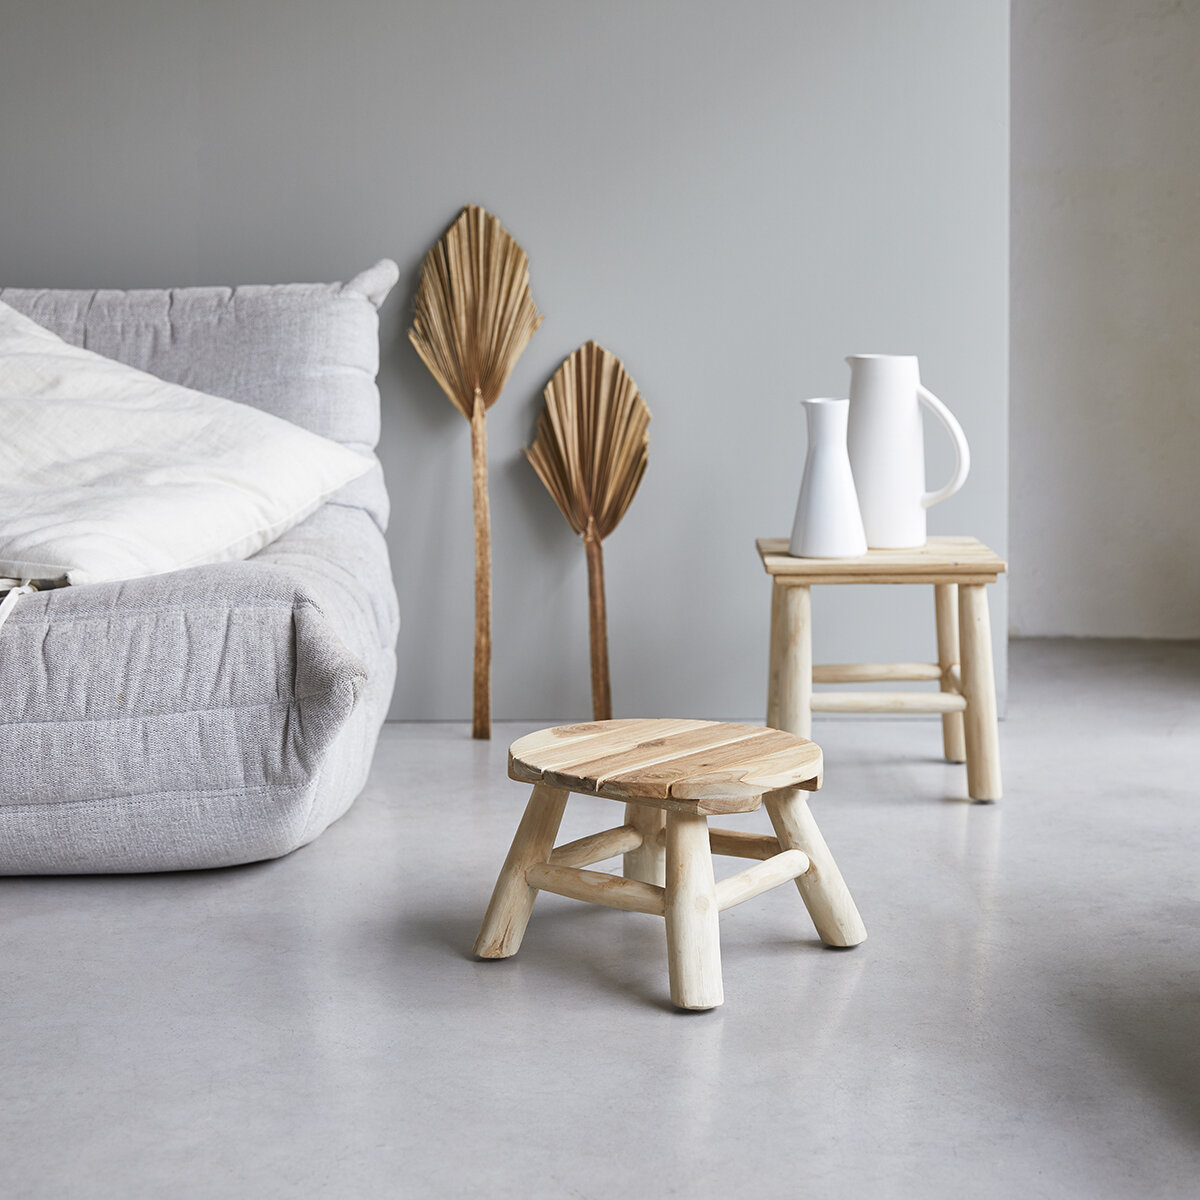 Kilim - Solid teak decorative stool